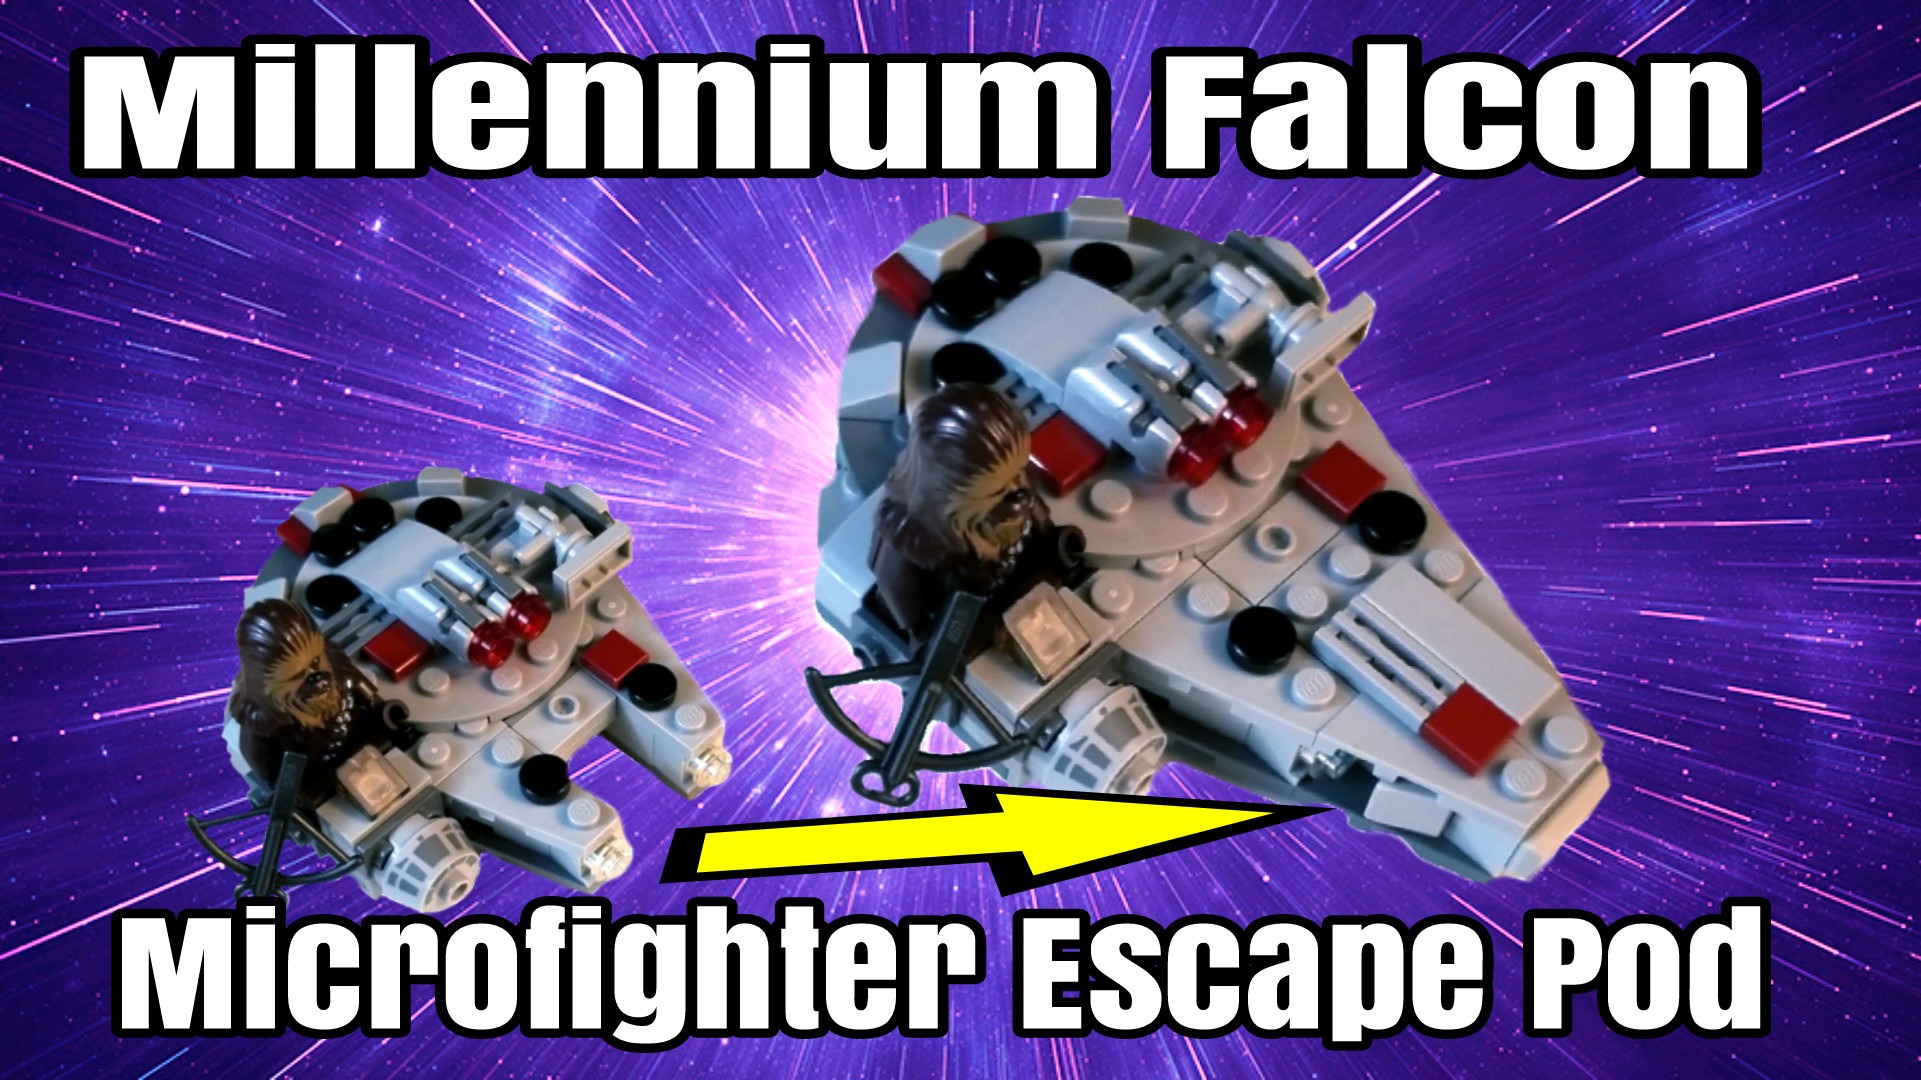 Escape Pod for the Microfighter Millennium Falcon sets!